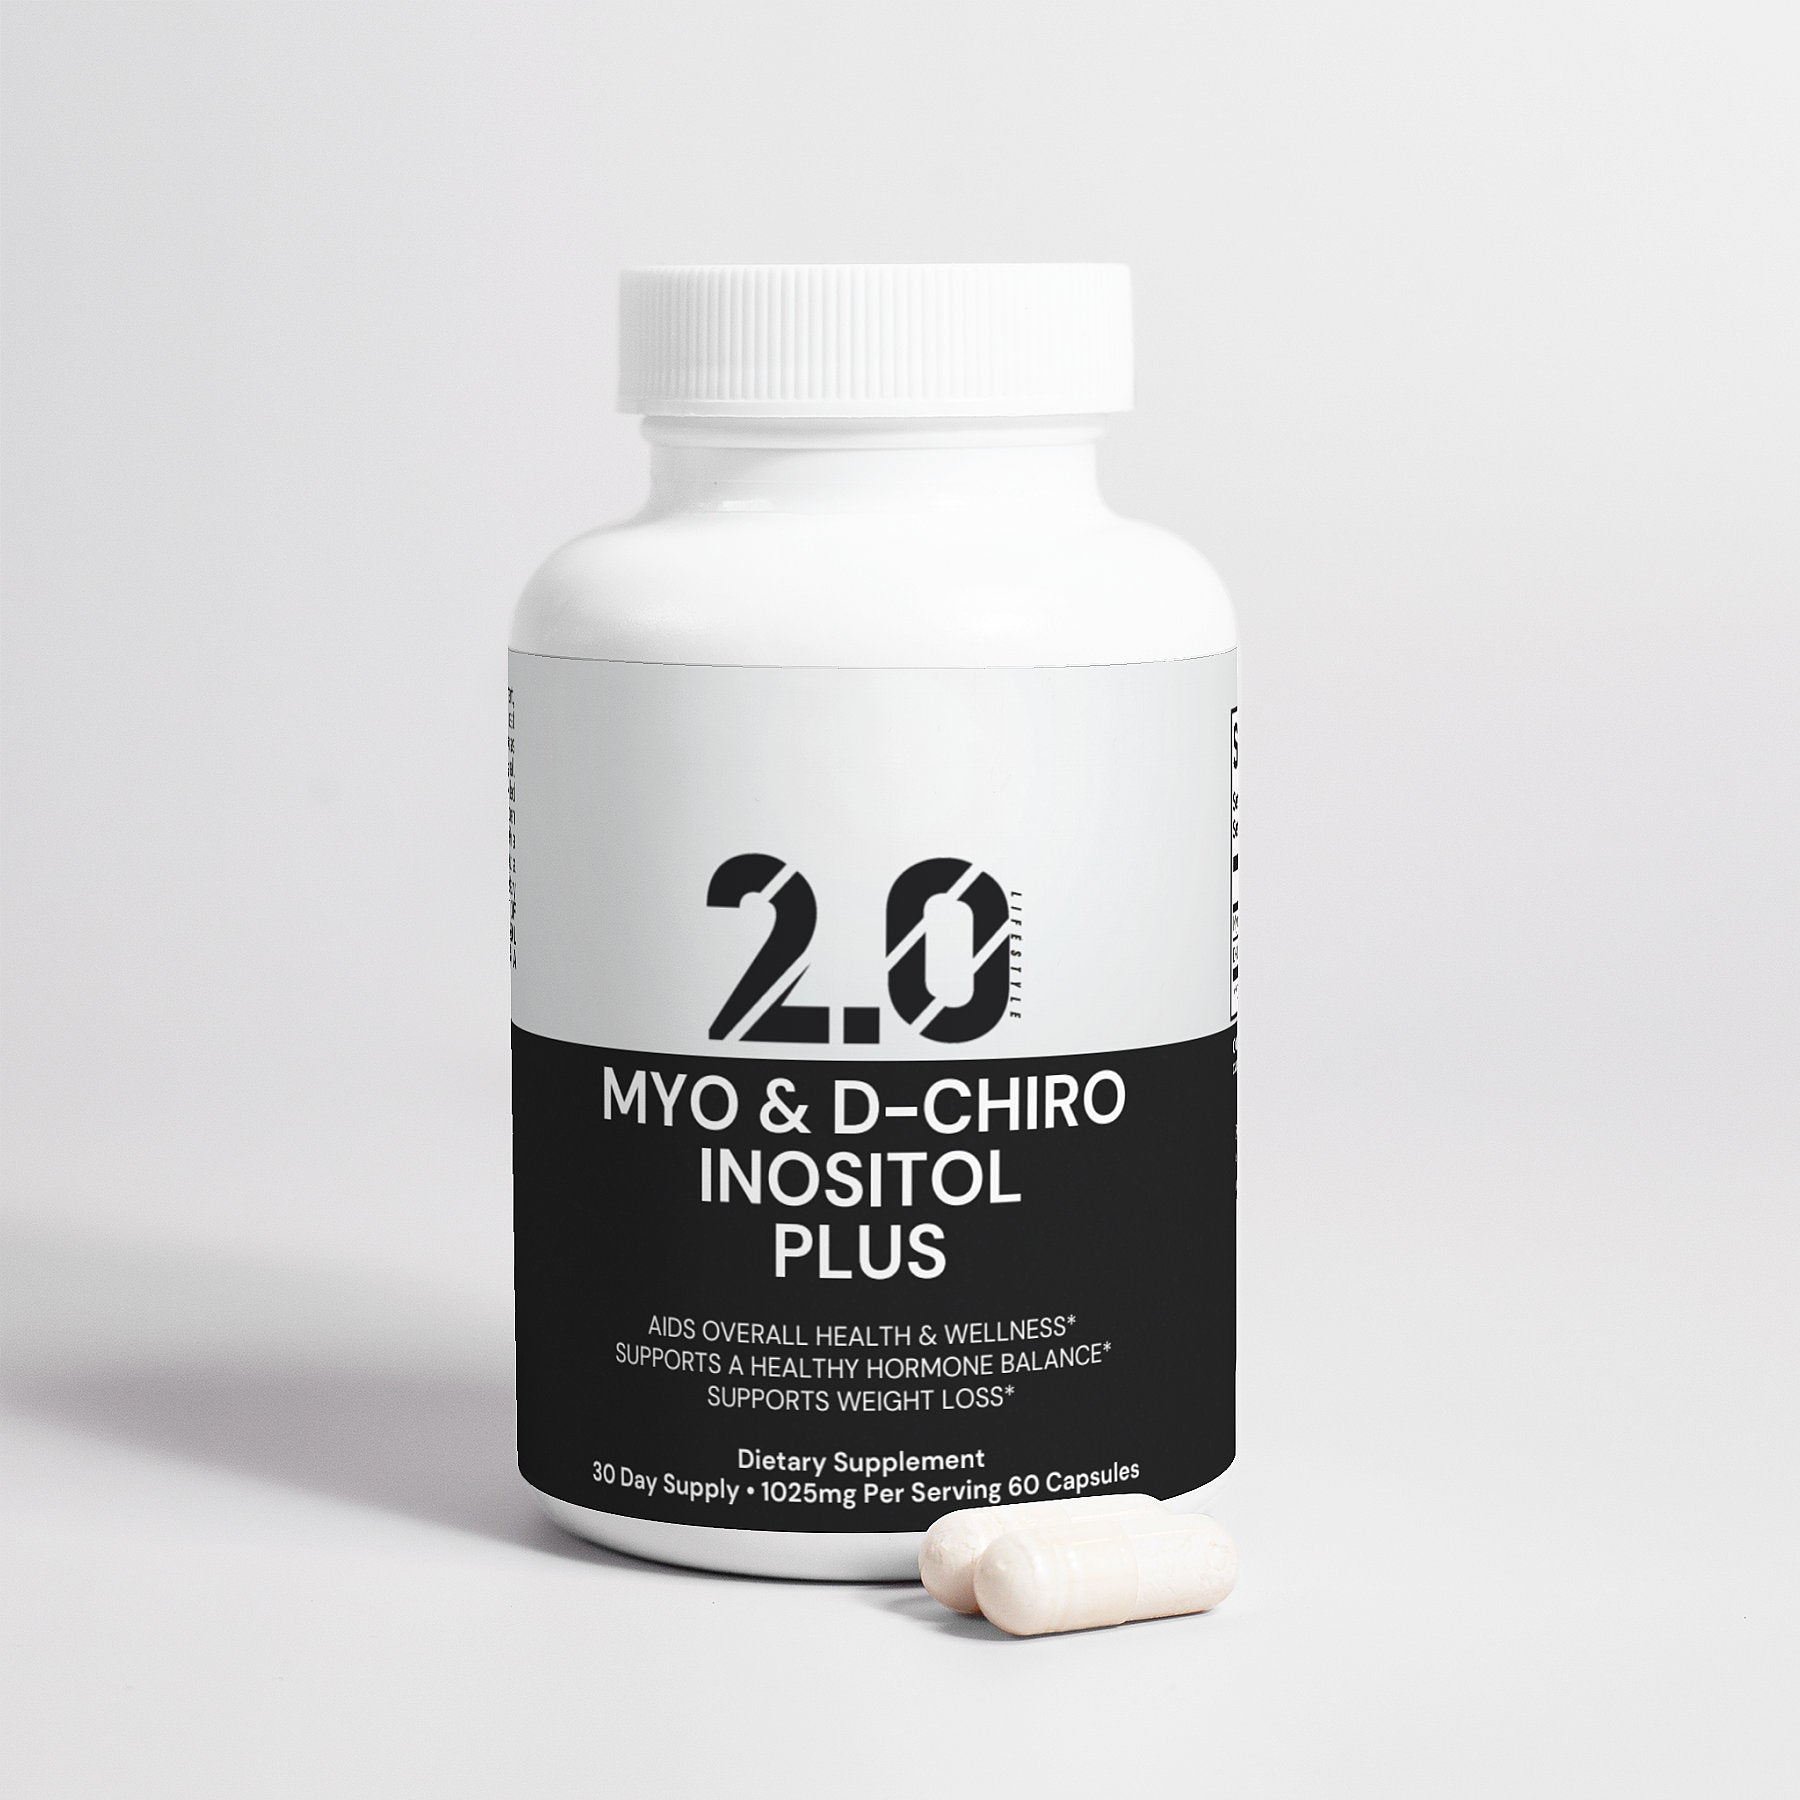 Myo D-Chiro Inositol